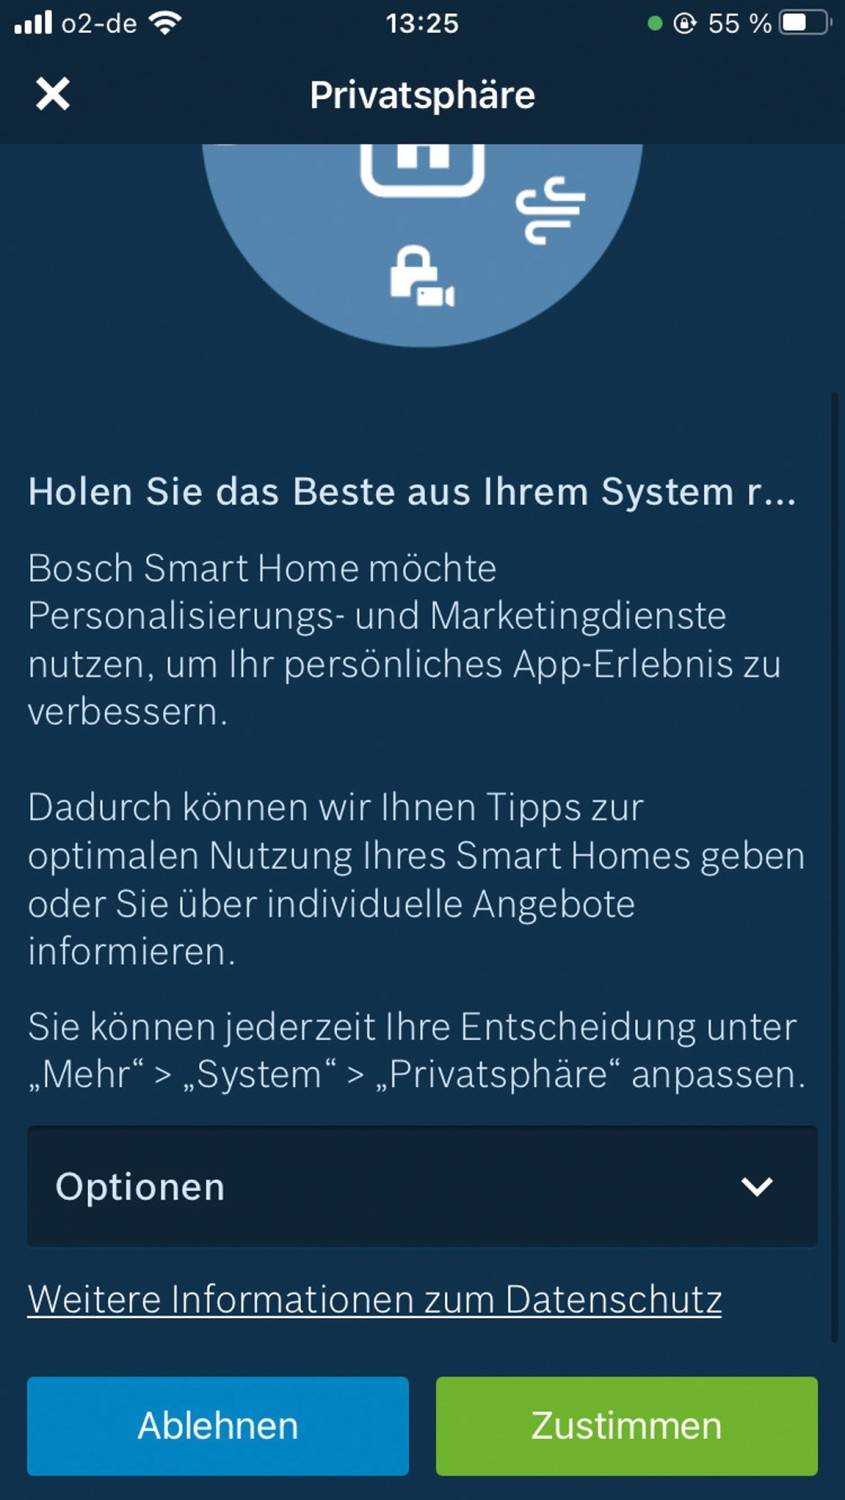 Smart Home System Bosch Smart Home im Test, Bild 11